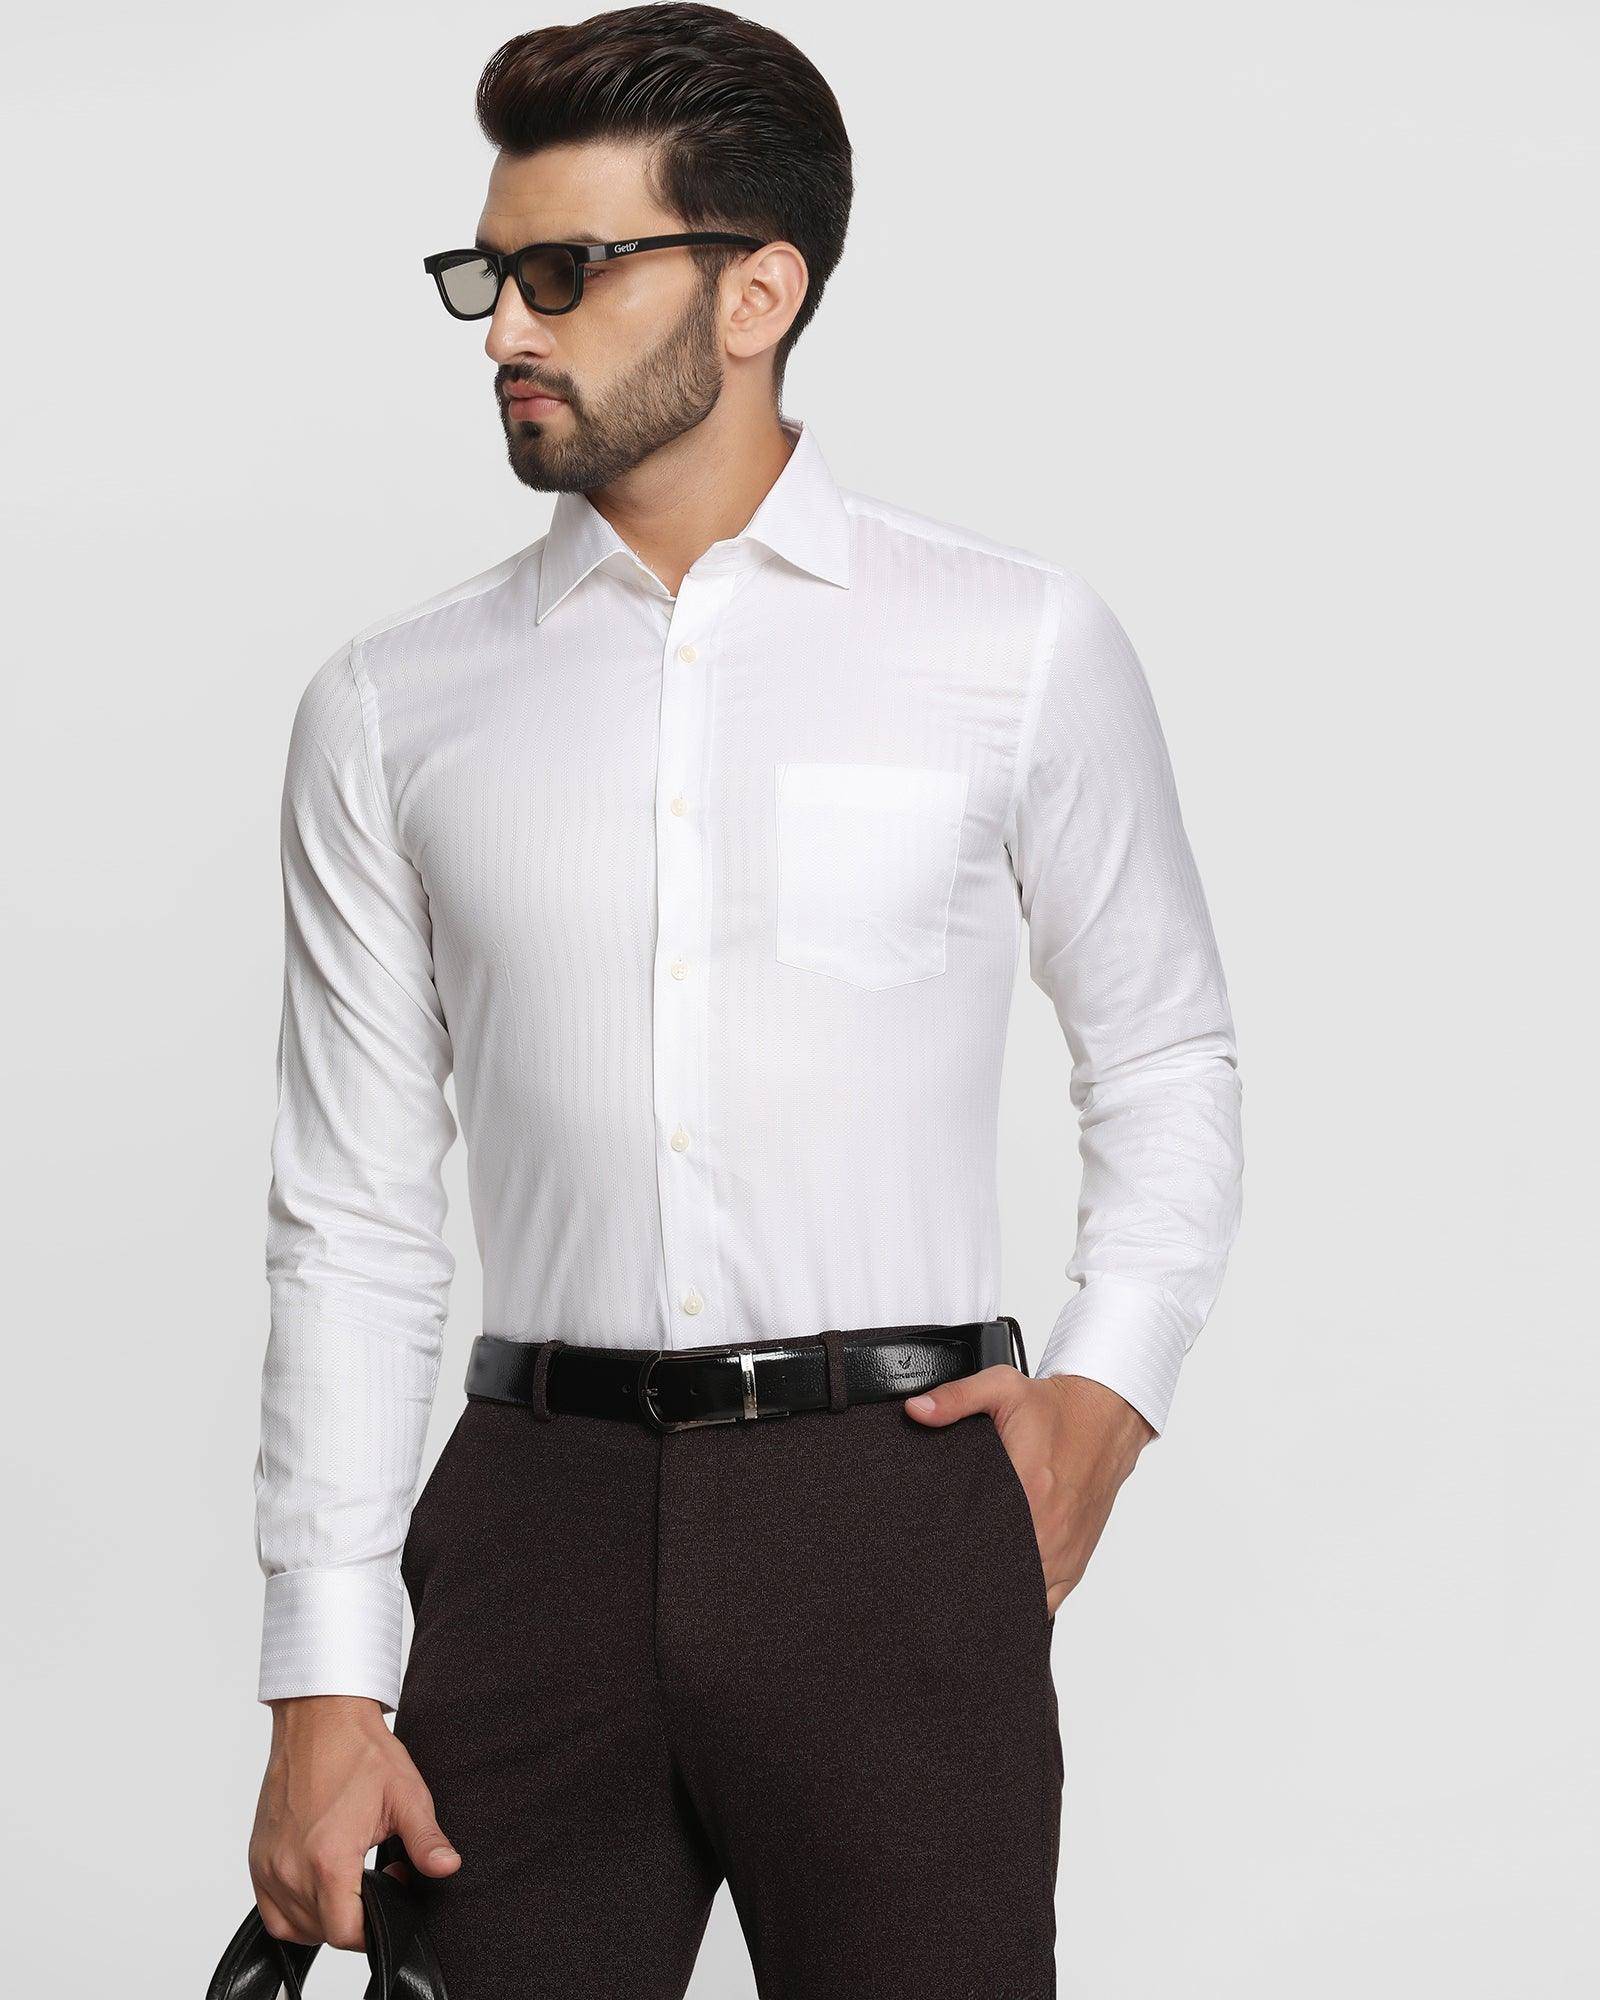 Formal White Striped Shirt - Nicholas